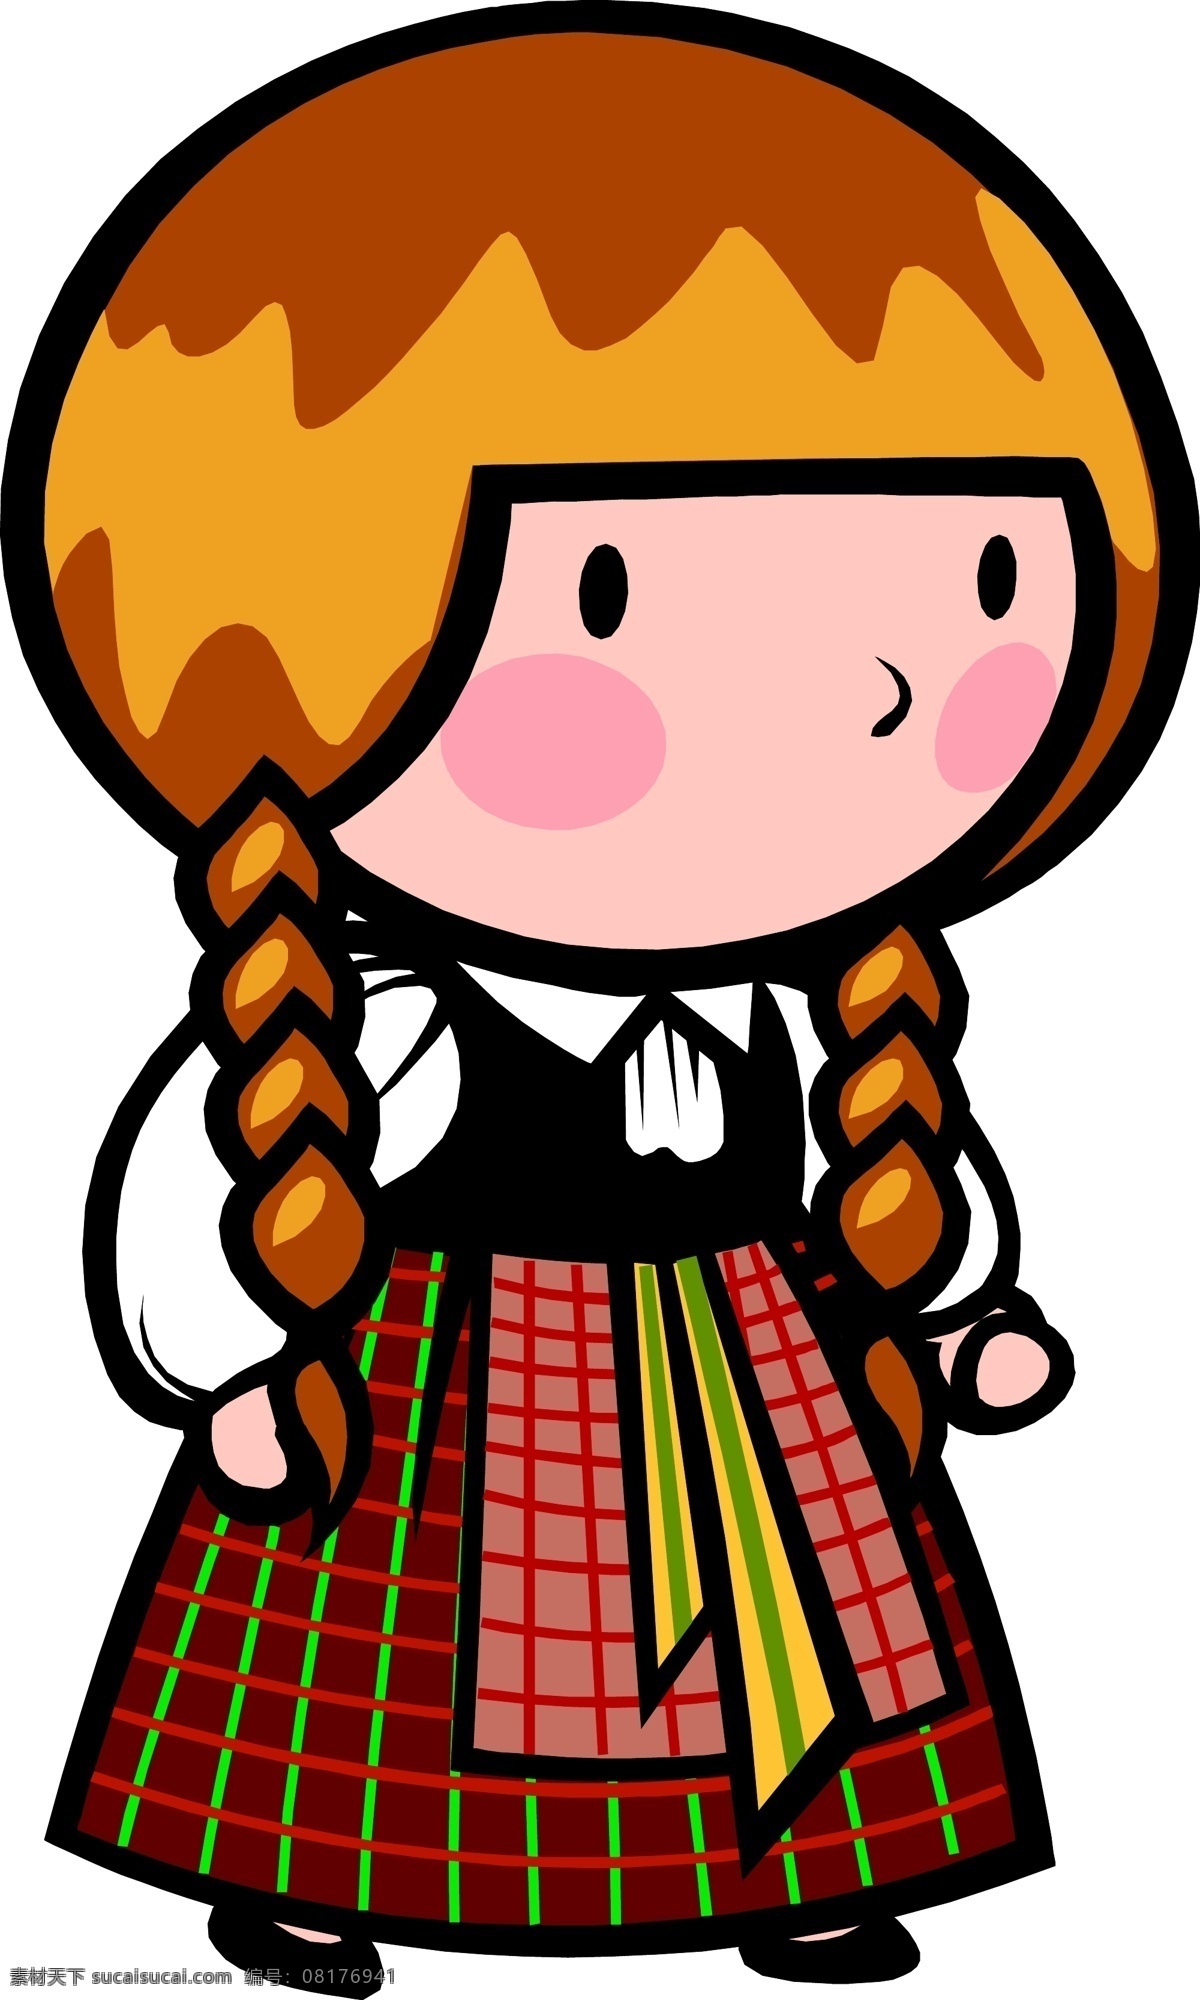 梳辫子 的卡 爱 苏格 拉 小女孩 插画 卡通 裙子 苏格兰 矢量 矢量图 矢量人物